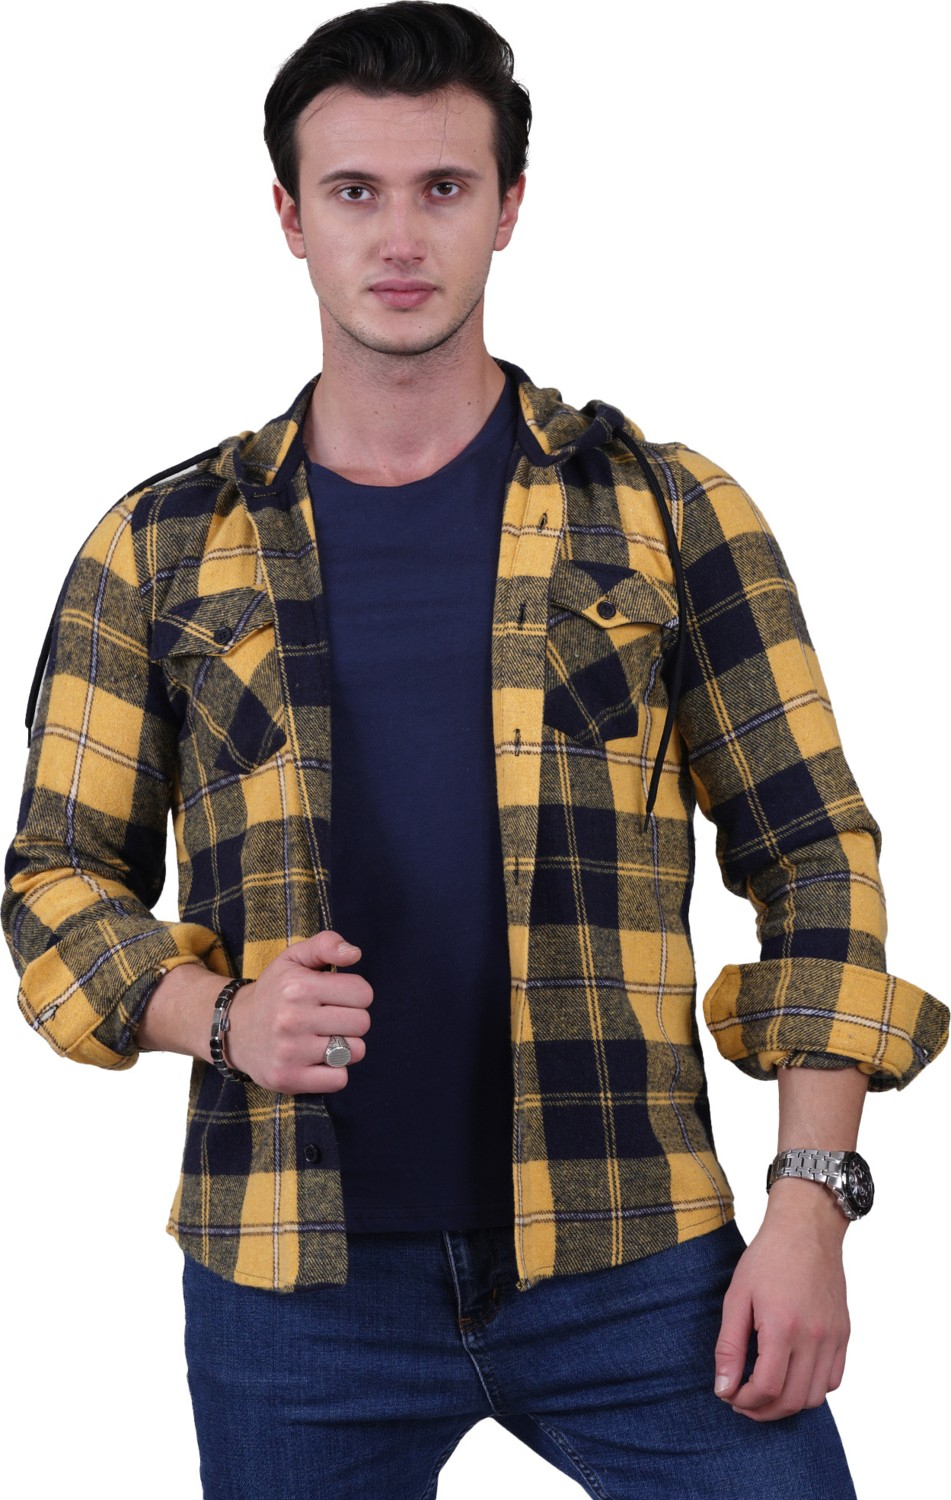 Эксклюзивная клетчатая рубашка-жакет с капюшоном и двумя карманами из шерсти на зиму.